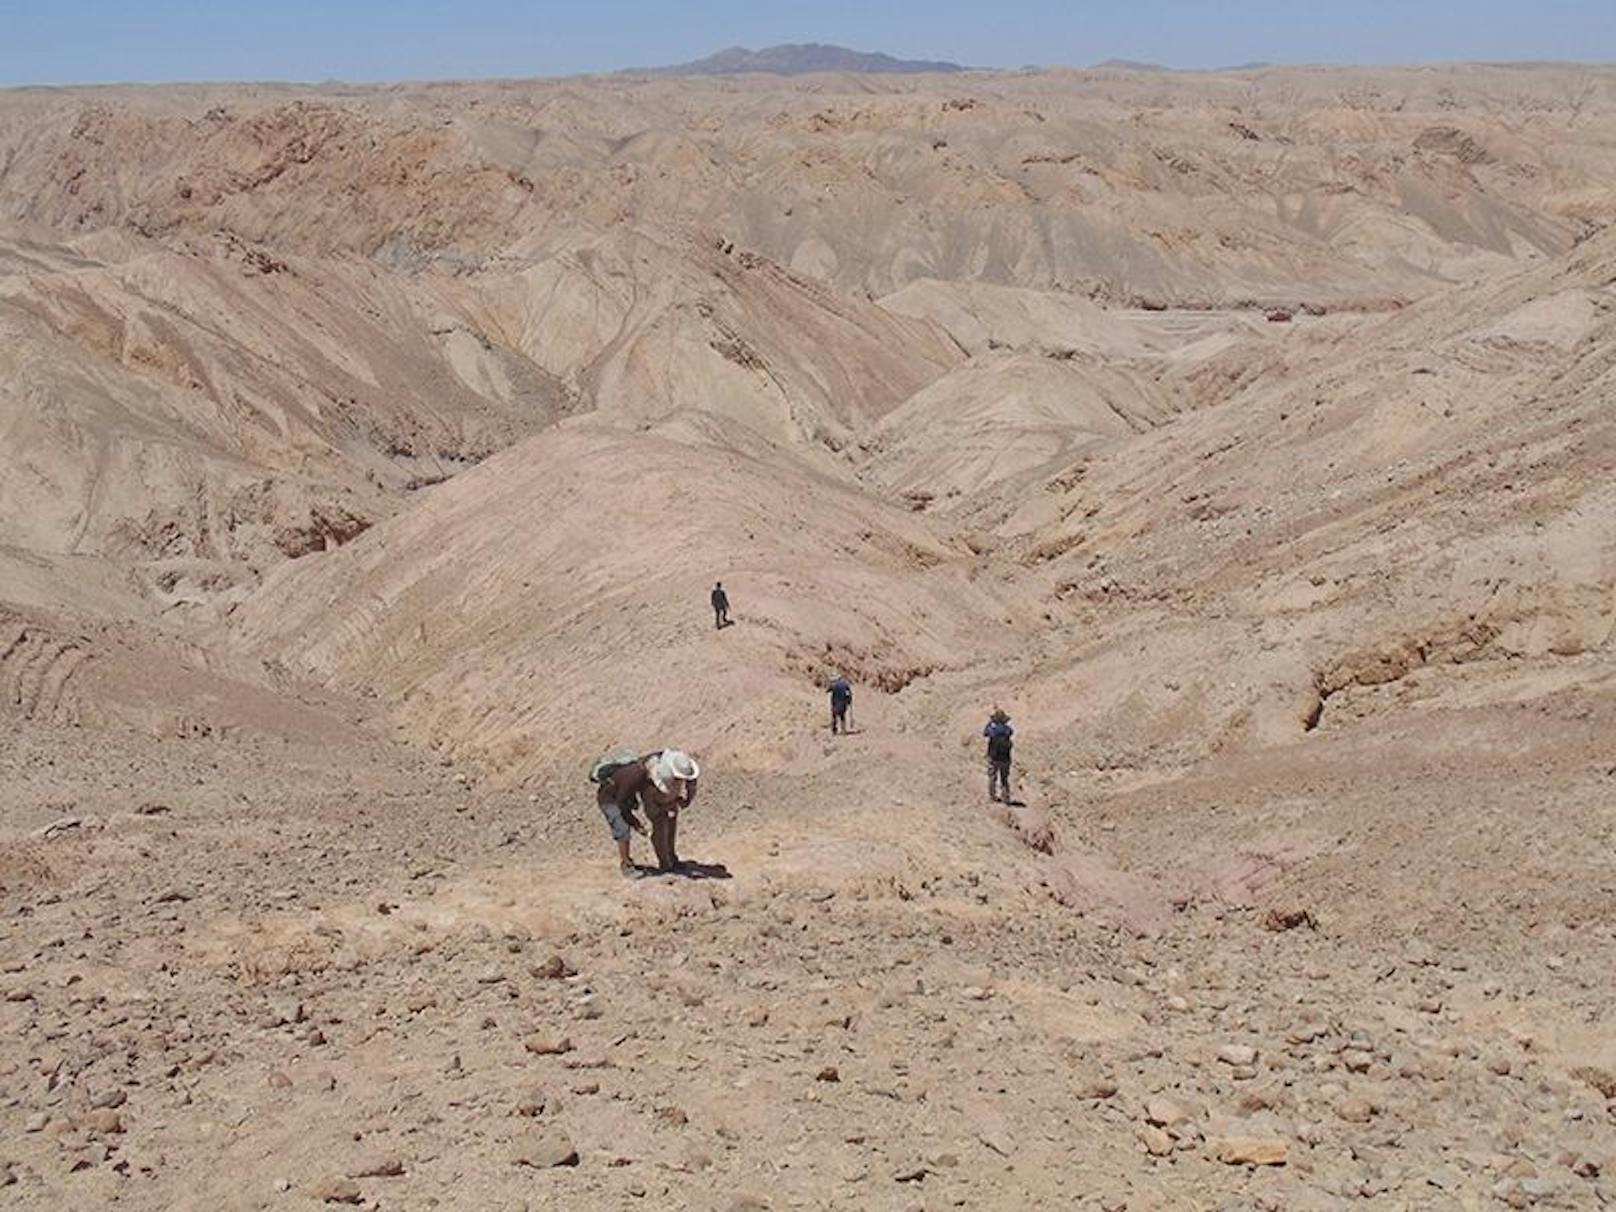 Die Entdeckung, die mitten in der Atacama-Wüste gemacht wurde, gesellt sich zu anderen Fossilien der Meeresfauna, die den Ort vor etwa 160 Millionen Jahren bewohnten, wie Pliosaurier und Plesiosaurier.